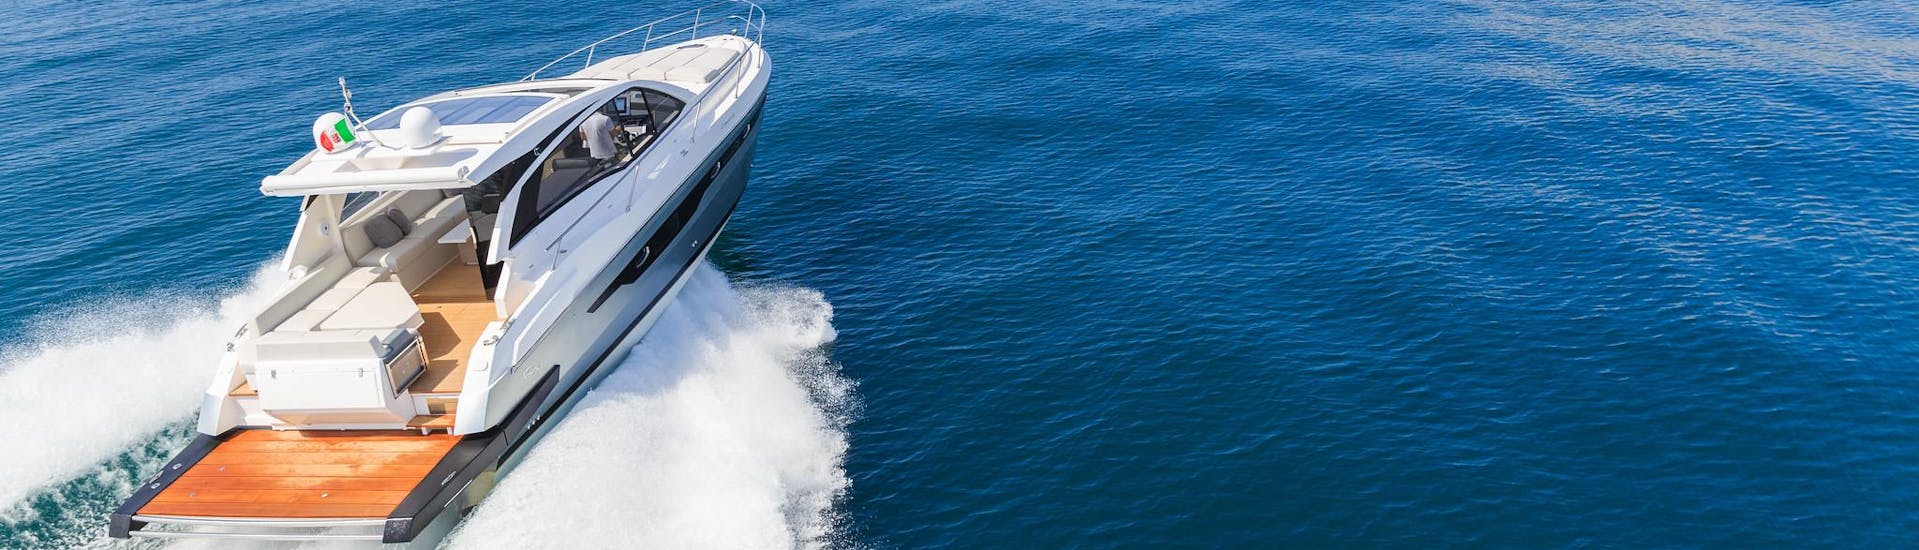 Panoramaansicht eines Luxusboots auf offenem Wasser während einer Fahrt.